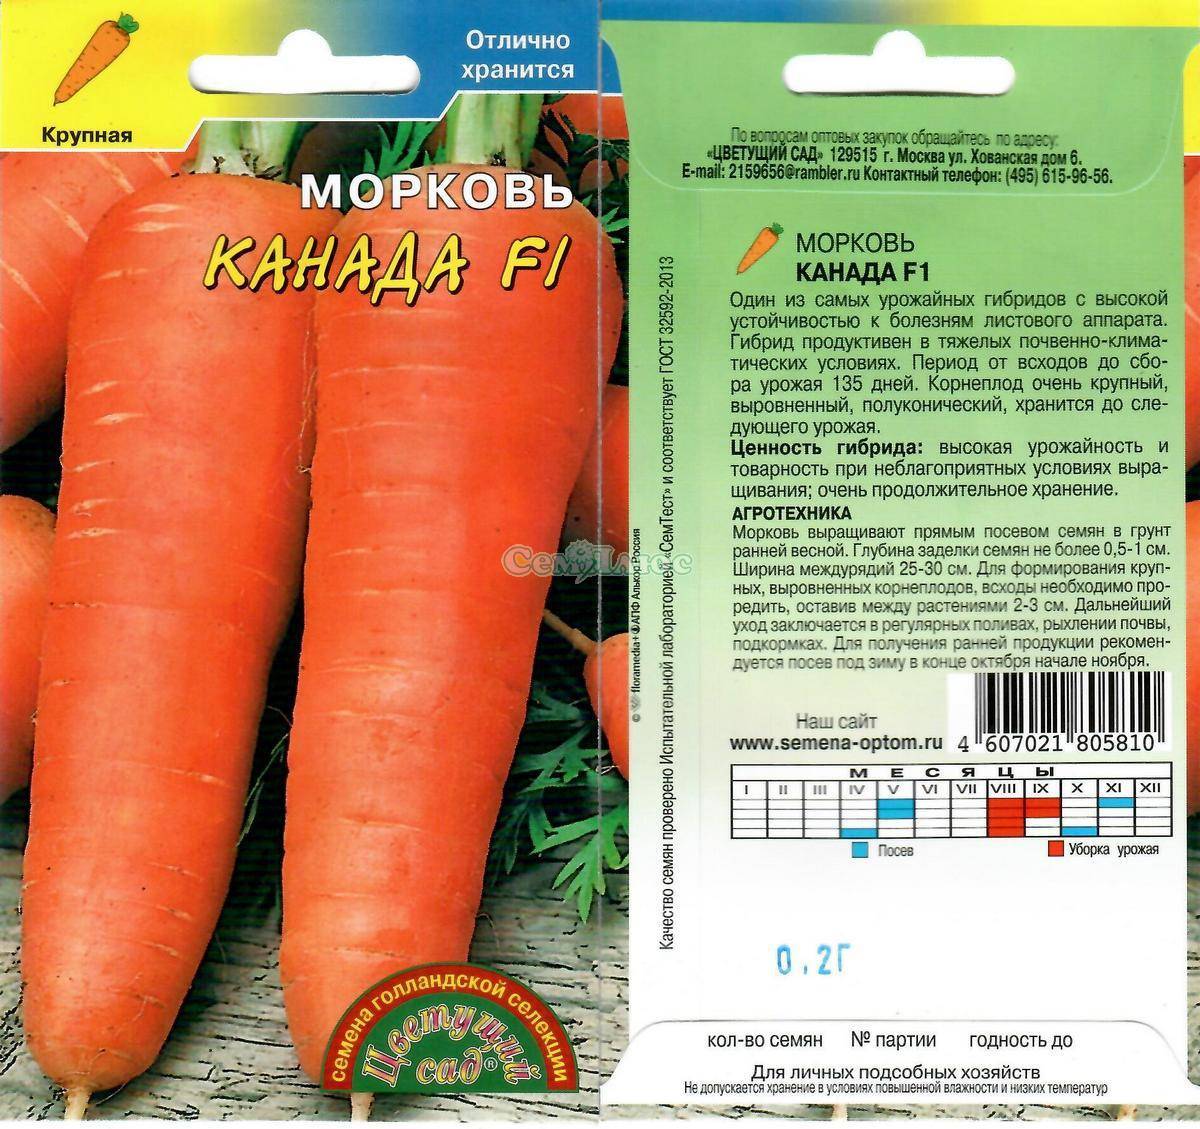 Особенности сорта моркови Канада и описание плодов